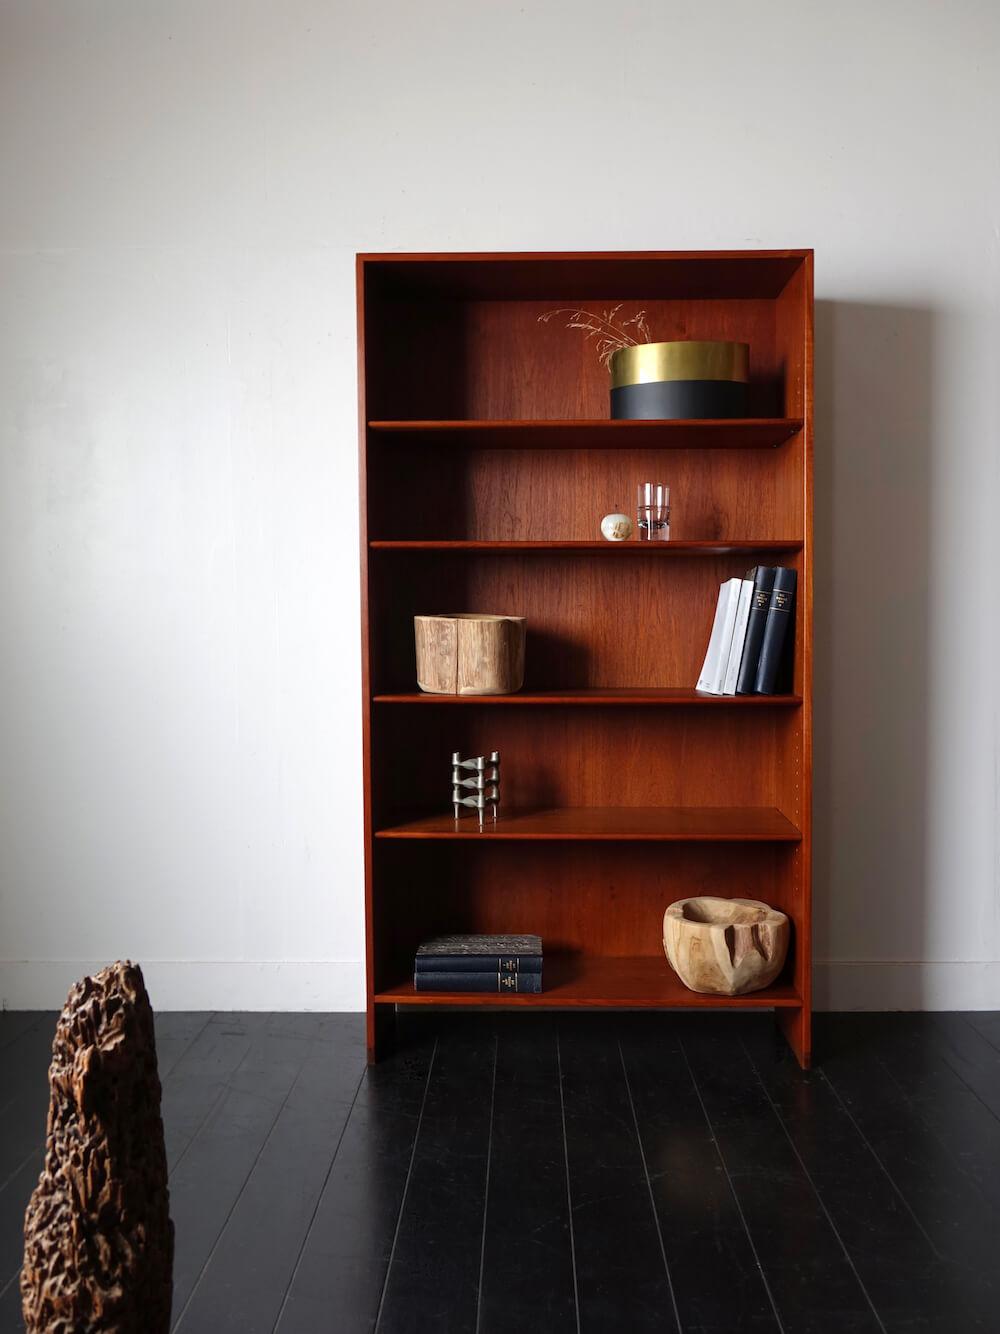 RY8 Bookshelf in teak by Hans J. Wegner for RY mobler